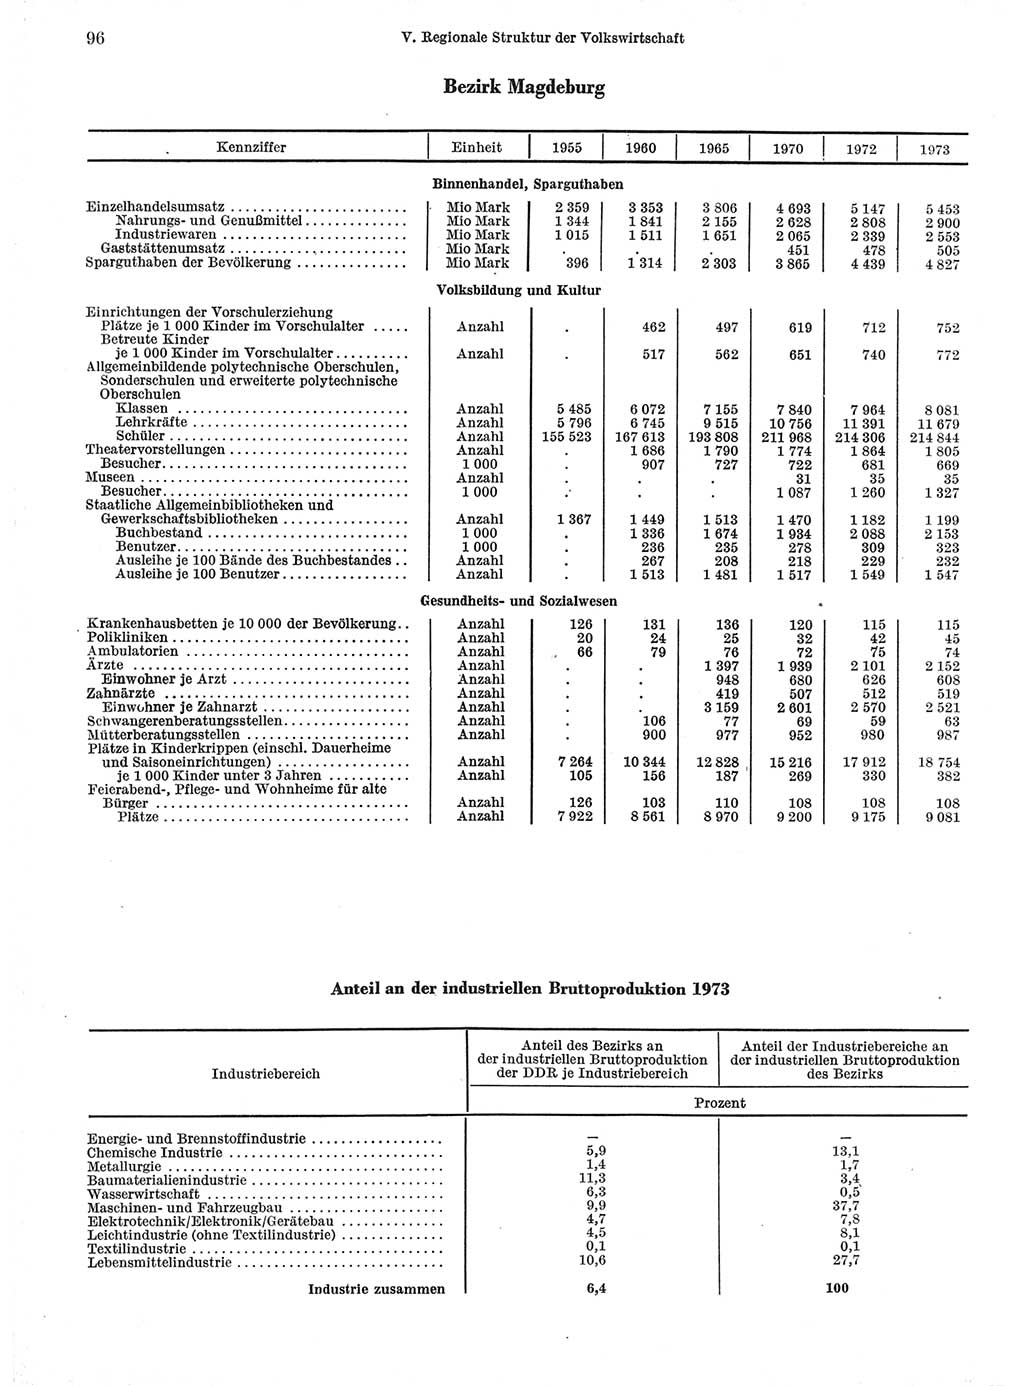 Statistisches Jahrbuch der Deutschen Demokratischen Republik (DDR) 1974, Seite 96 (Stat. Jb. DDR 1974, S. 96)